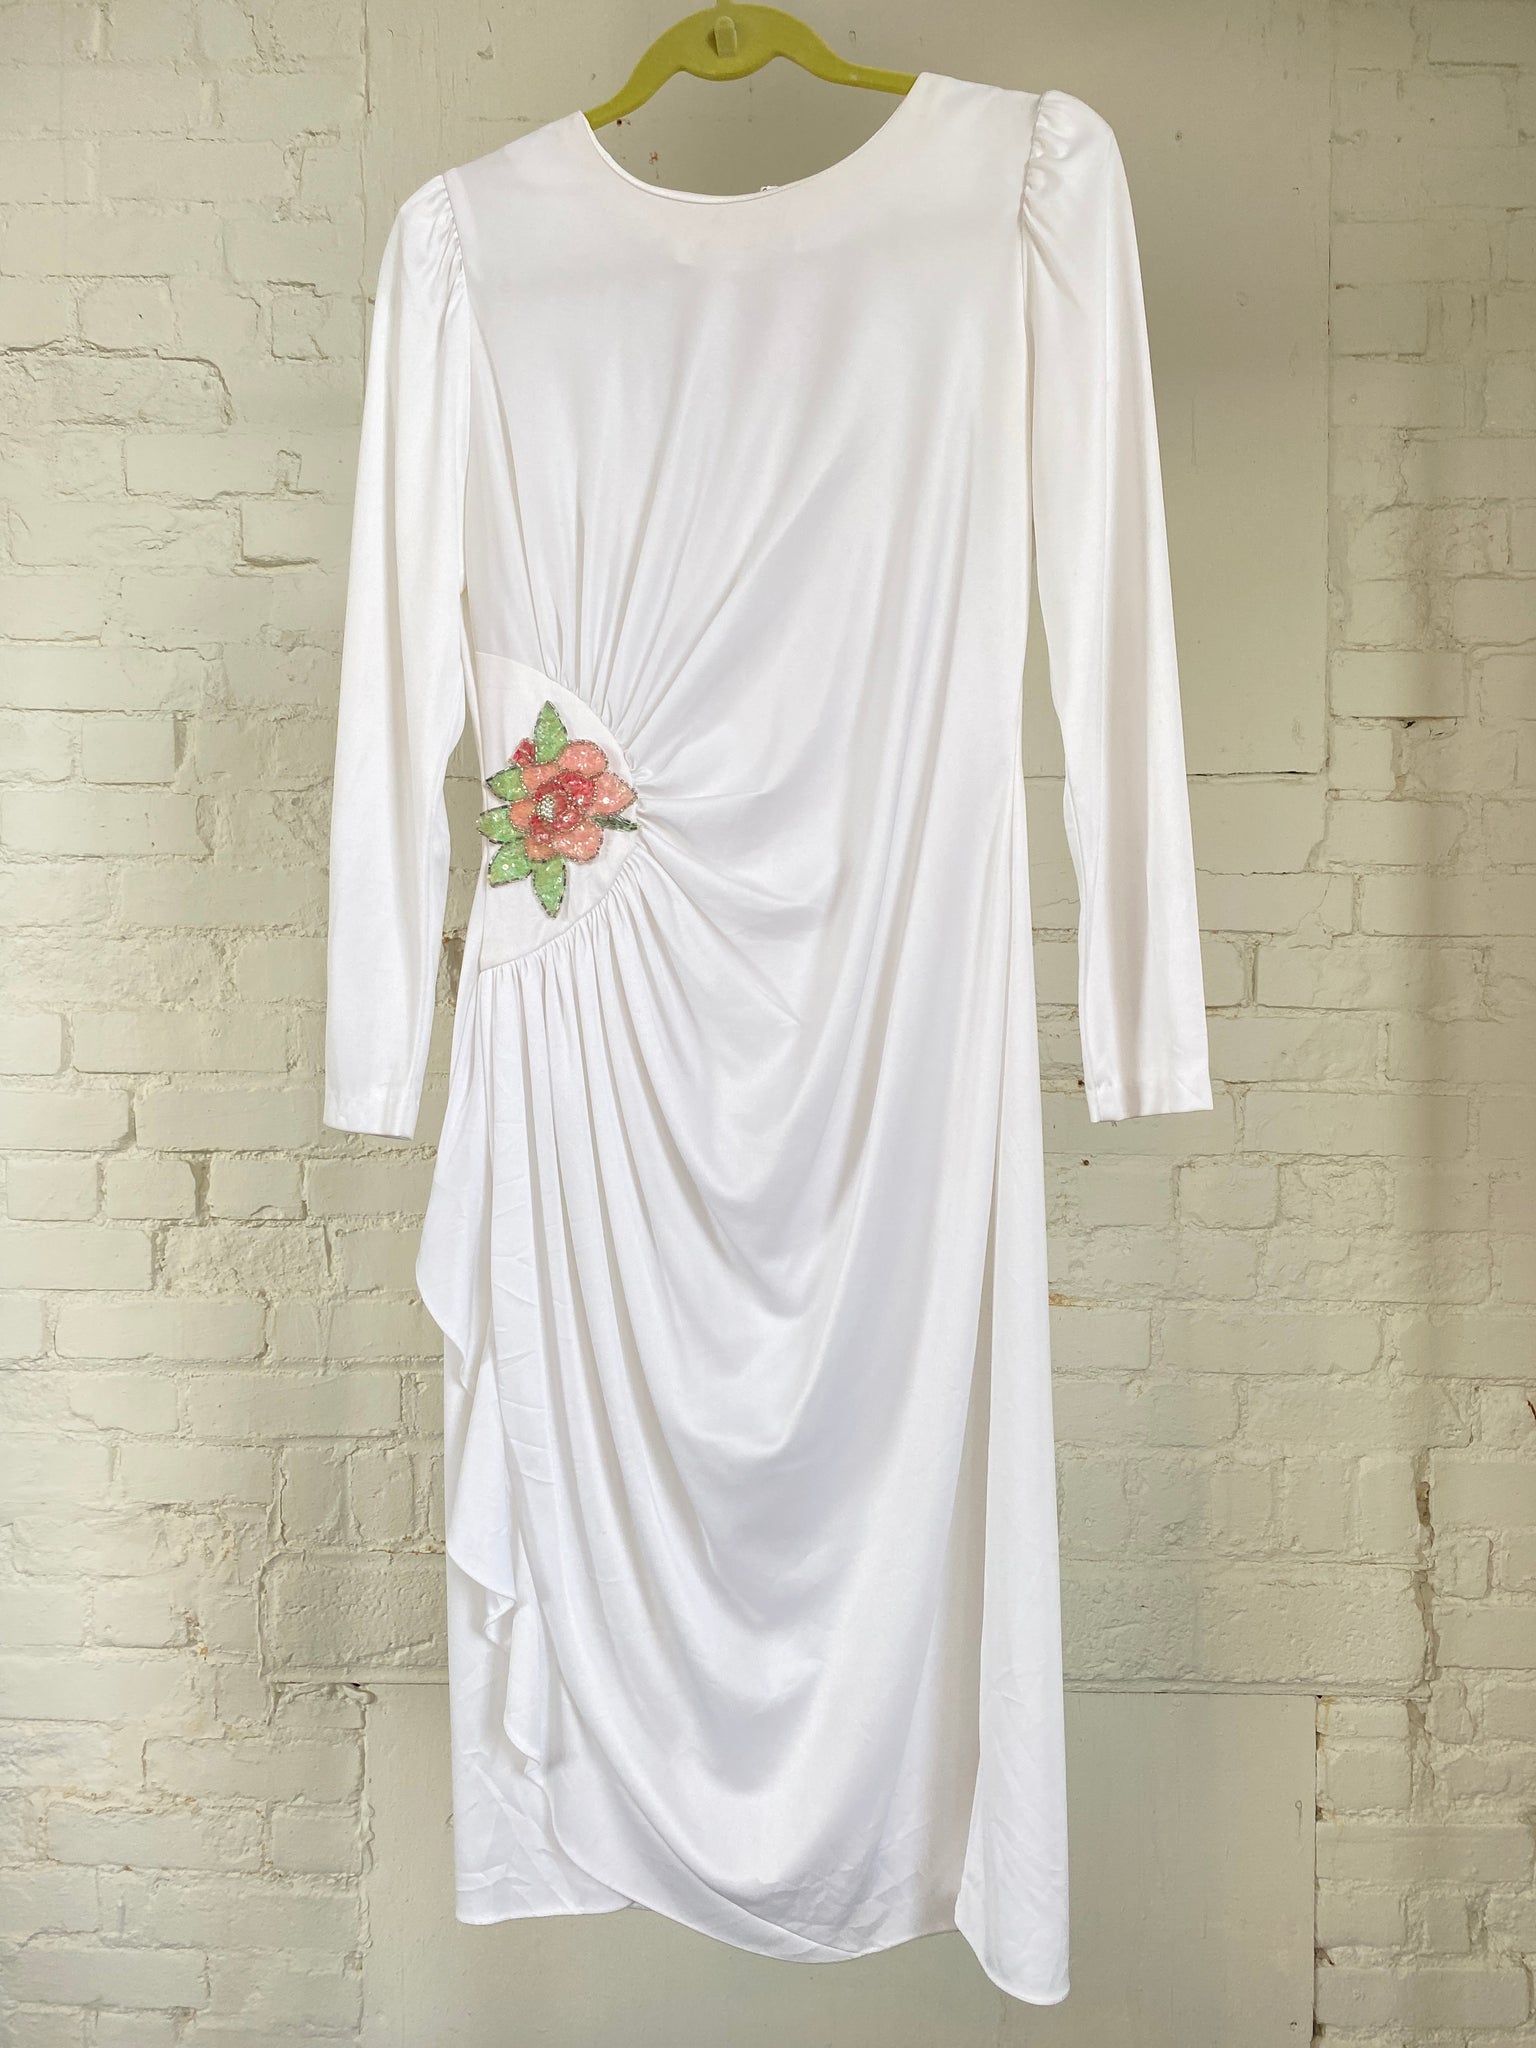 White Vintage Dress with Sequin Floral Applique (S)